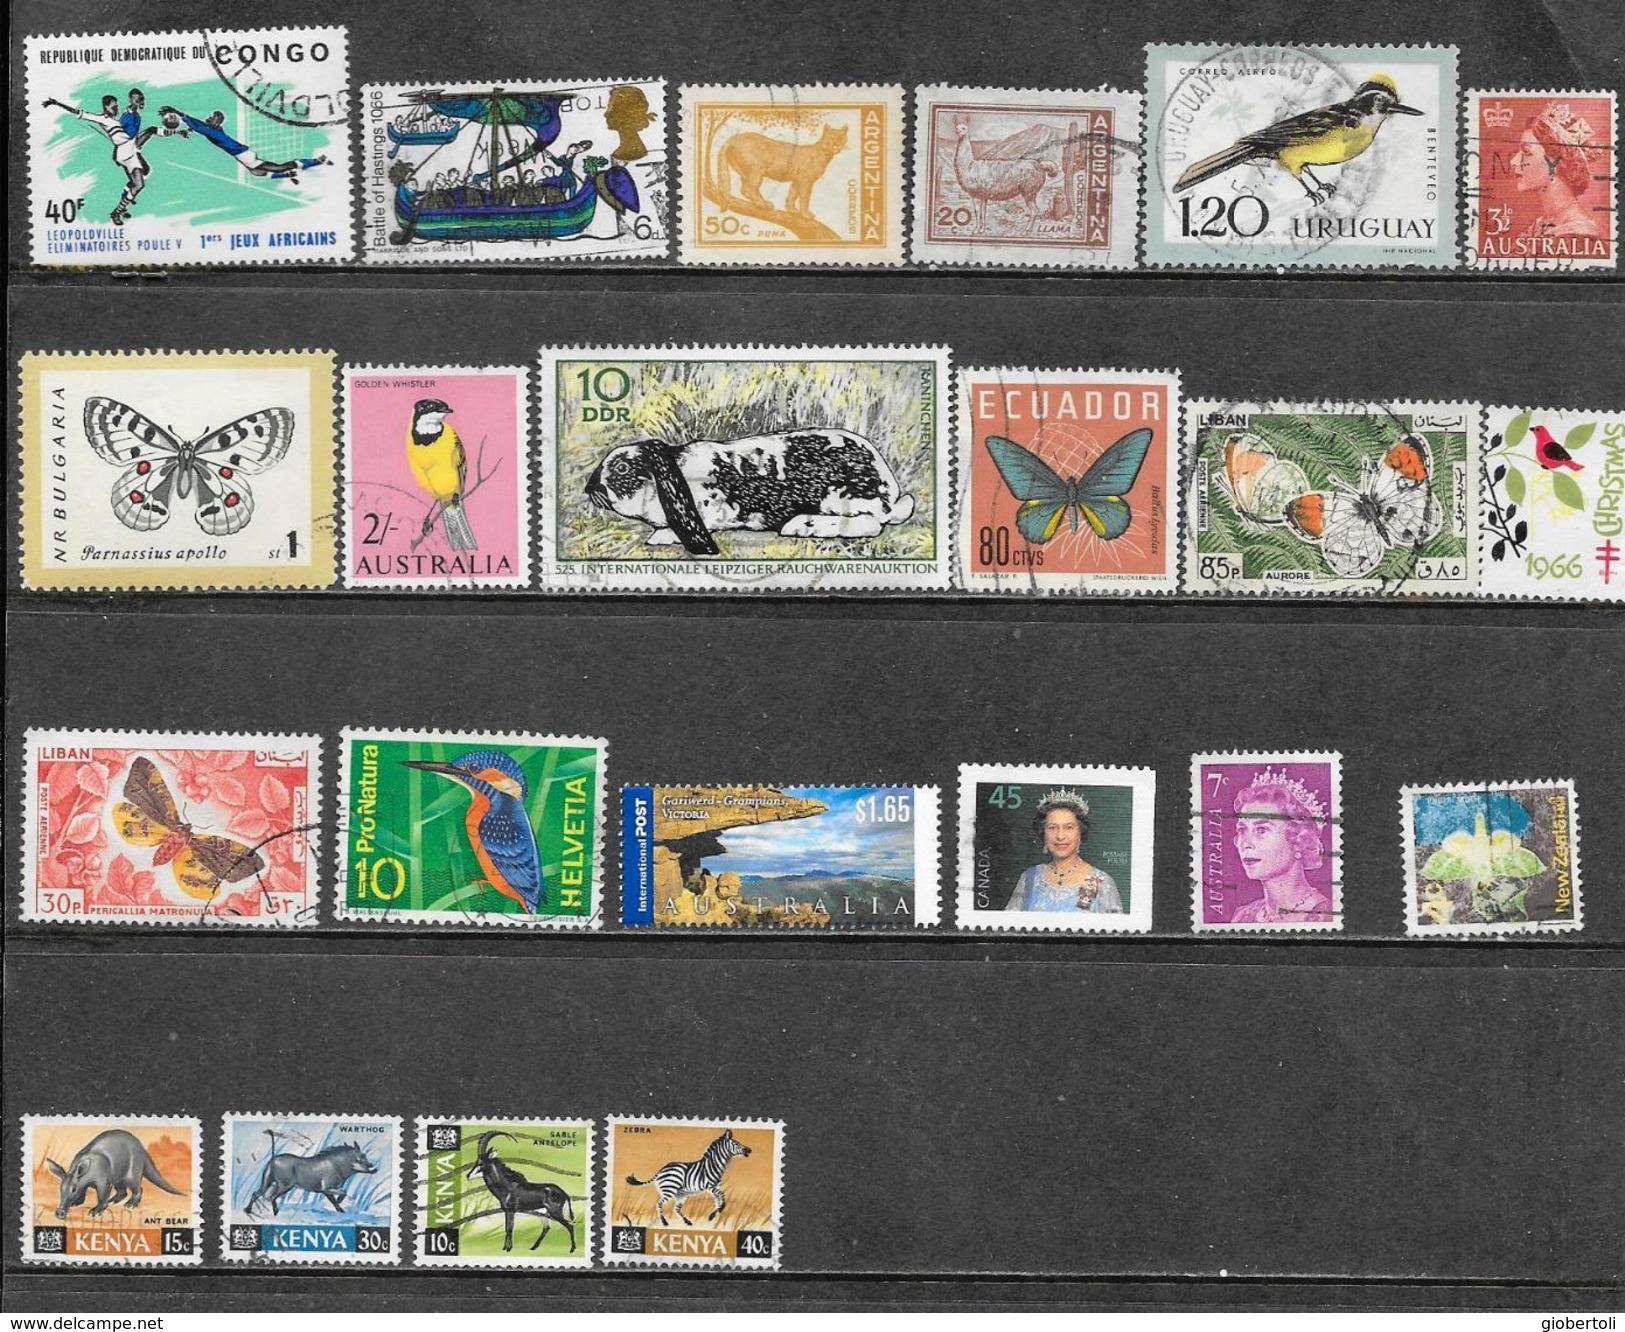 Piccola Collezione Di 188 Francobolli Mondiali Usati, Small Collection Of 188 Used World Postage Stamps, Petite Collecti - Collezioni (senza Album)